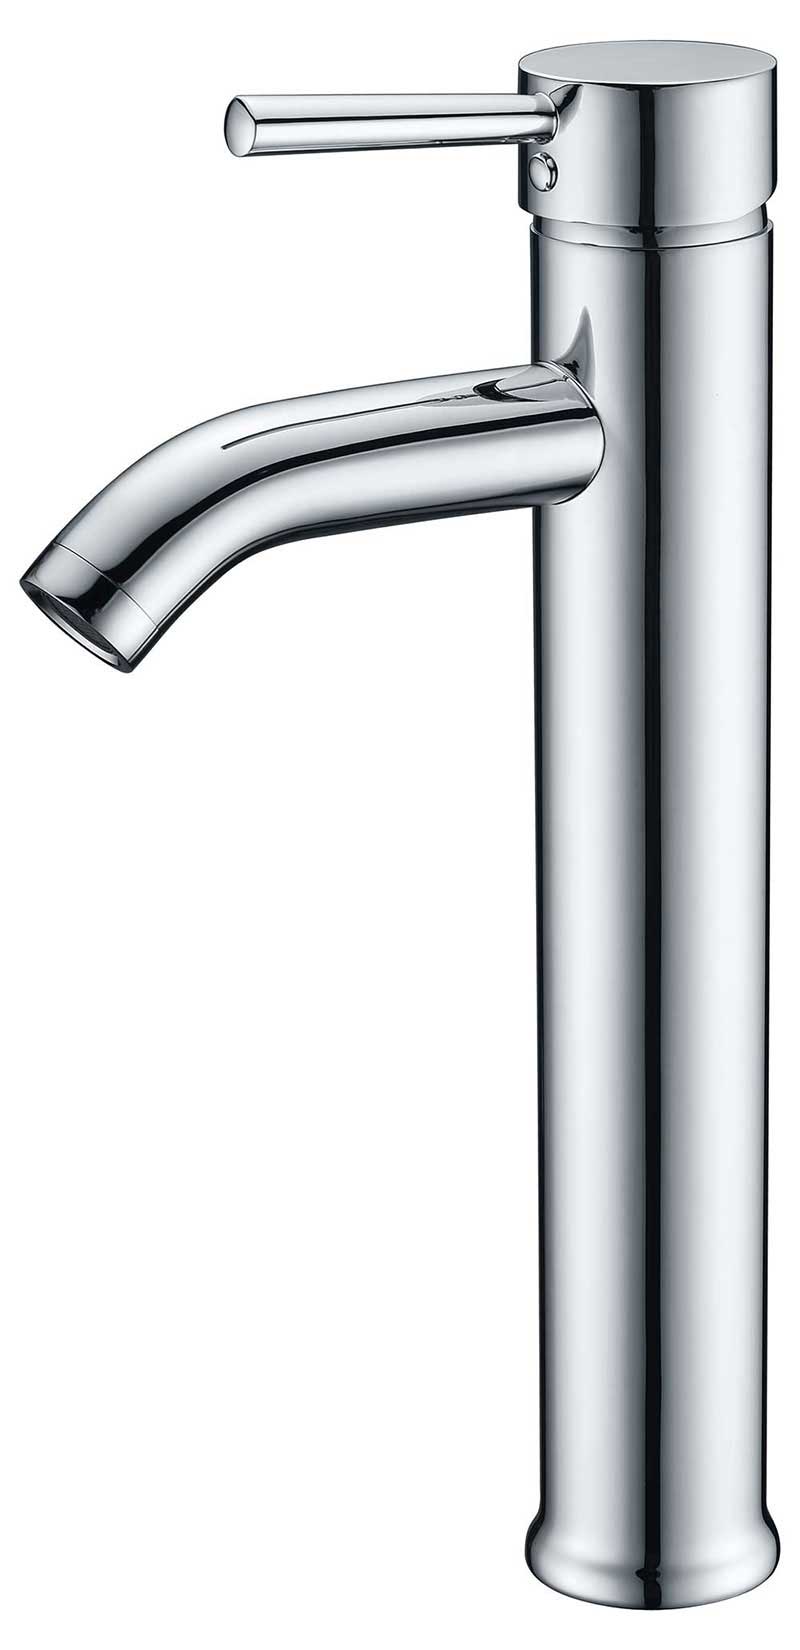 Anzzi Fann Single Handle Vessel Sink Faucet in Polished Chrome 2